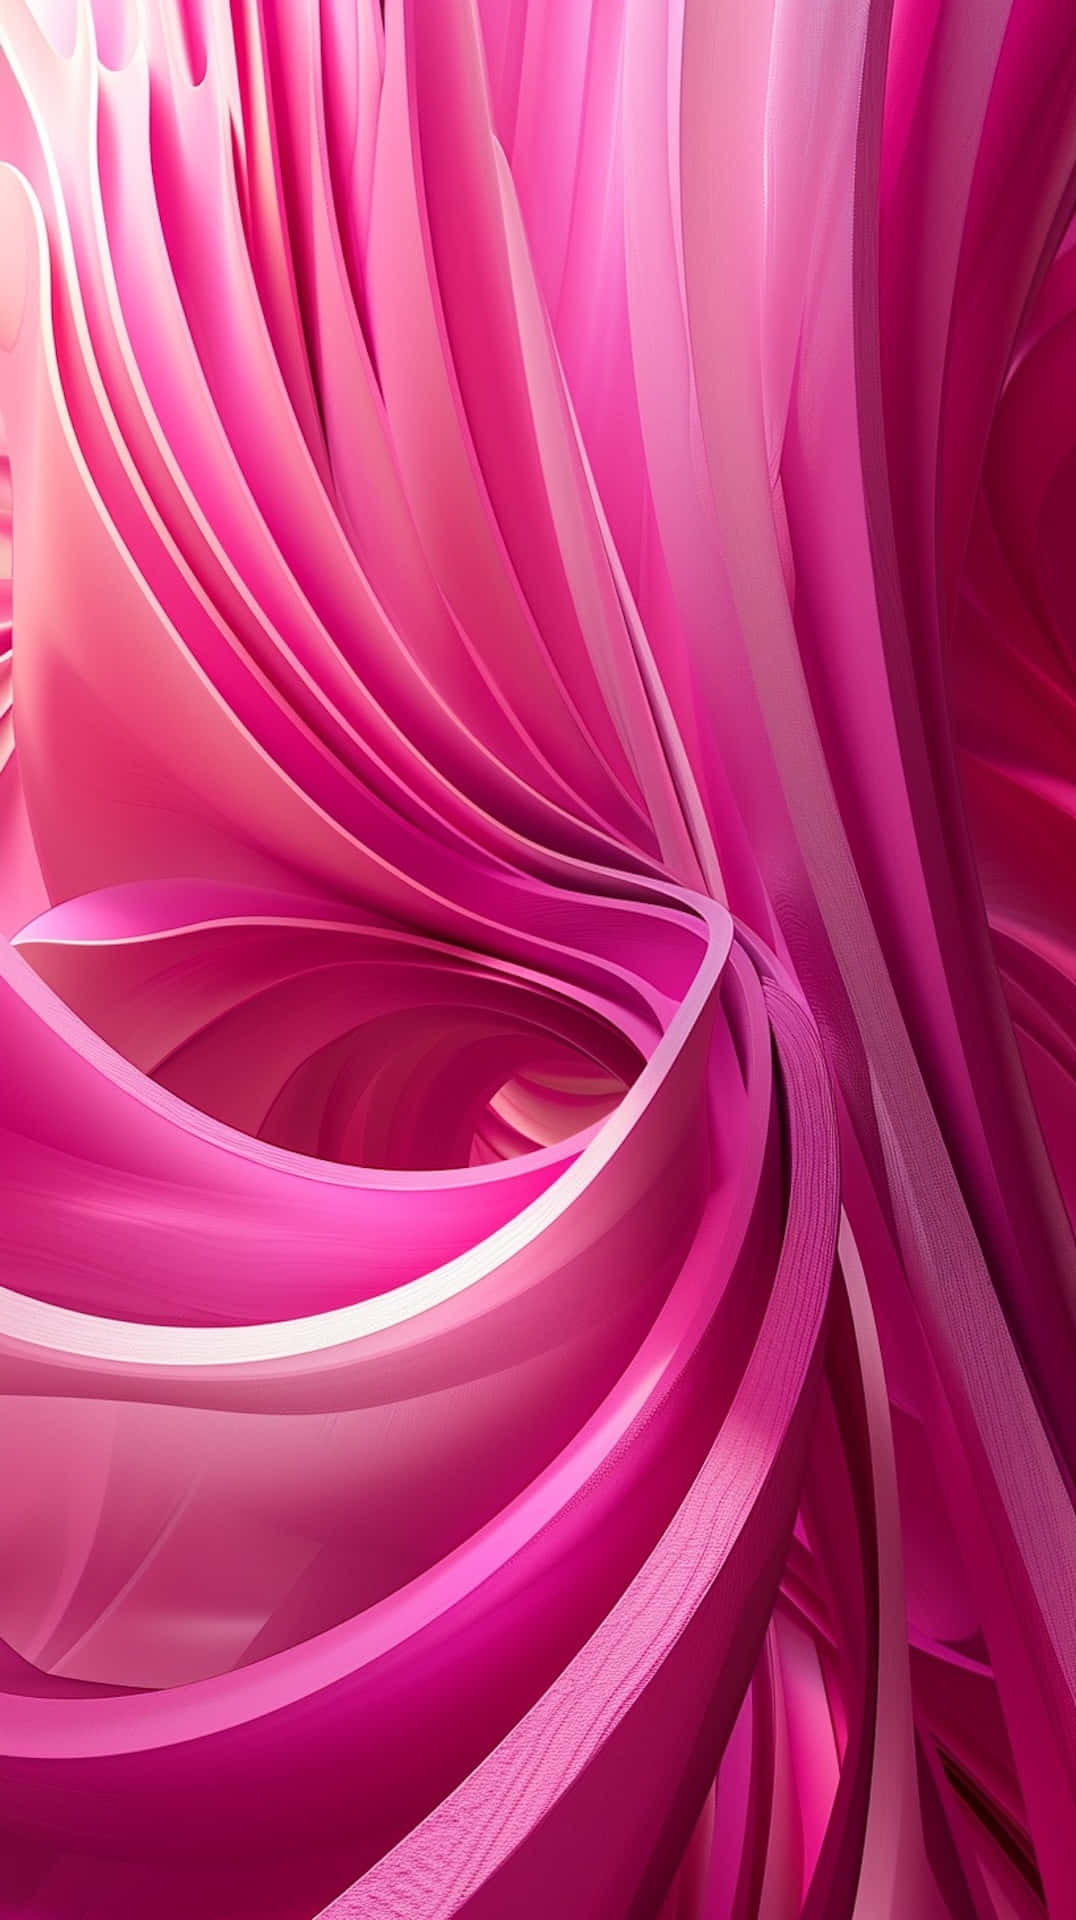 Abstract Pink Swirls3 D Artwork Wallpaper